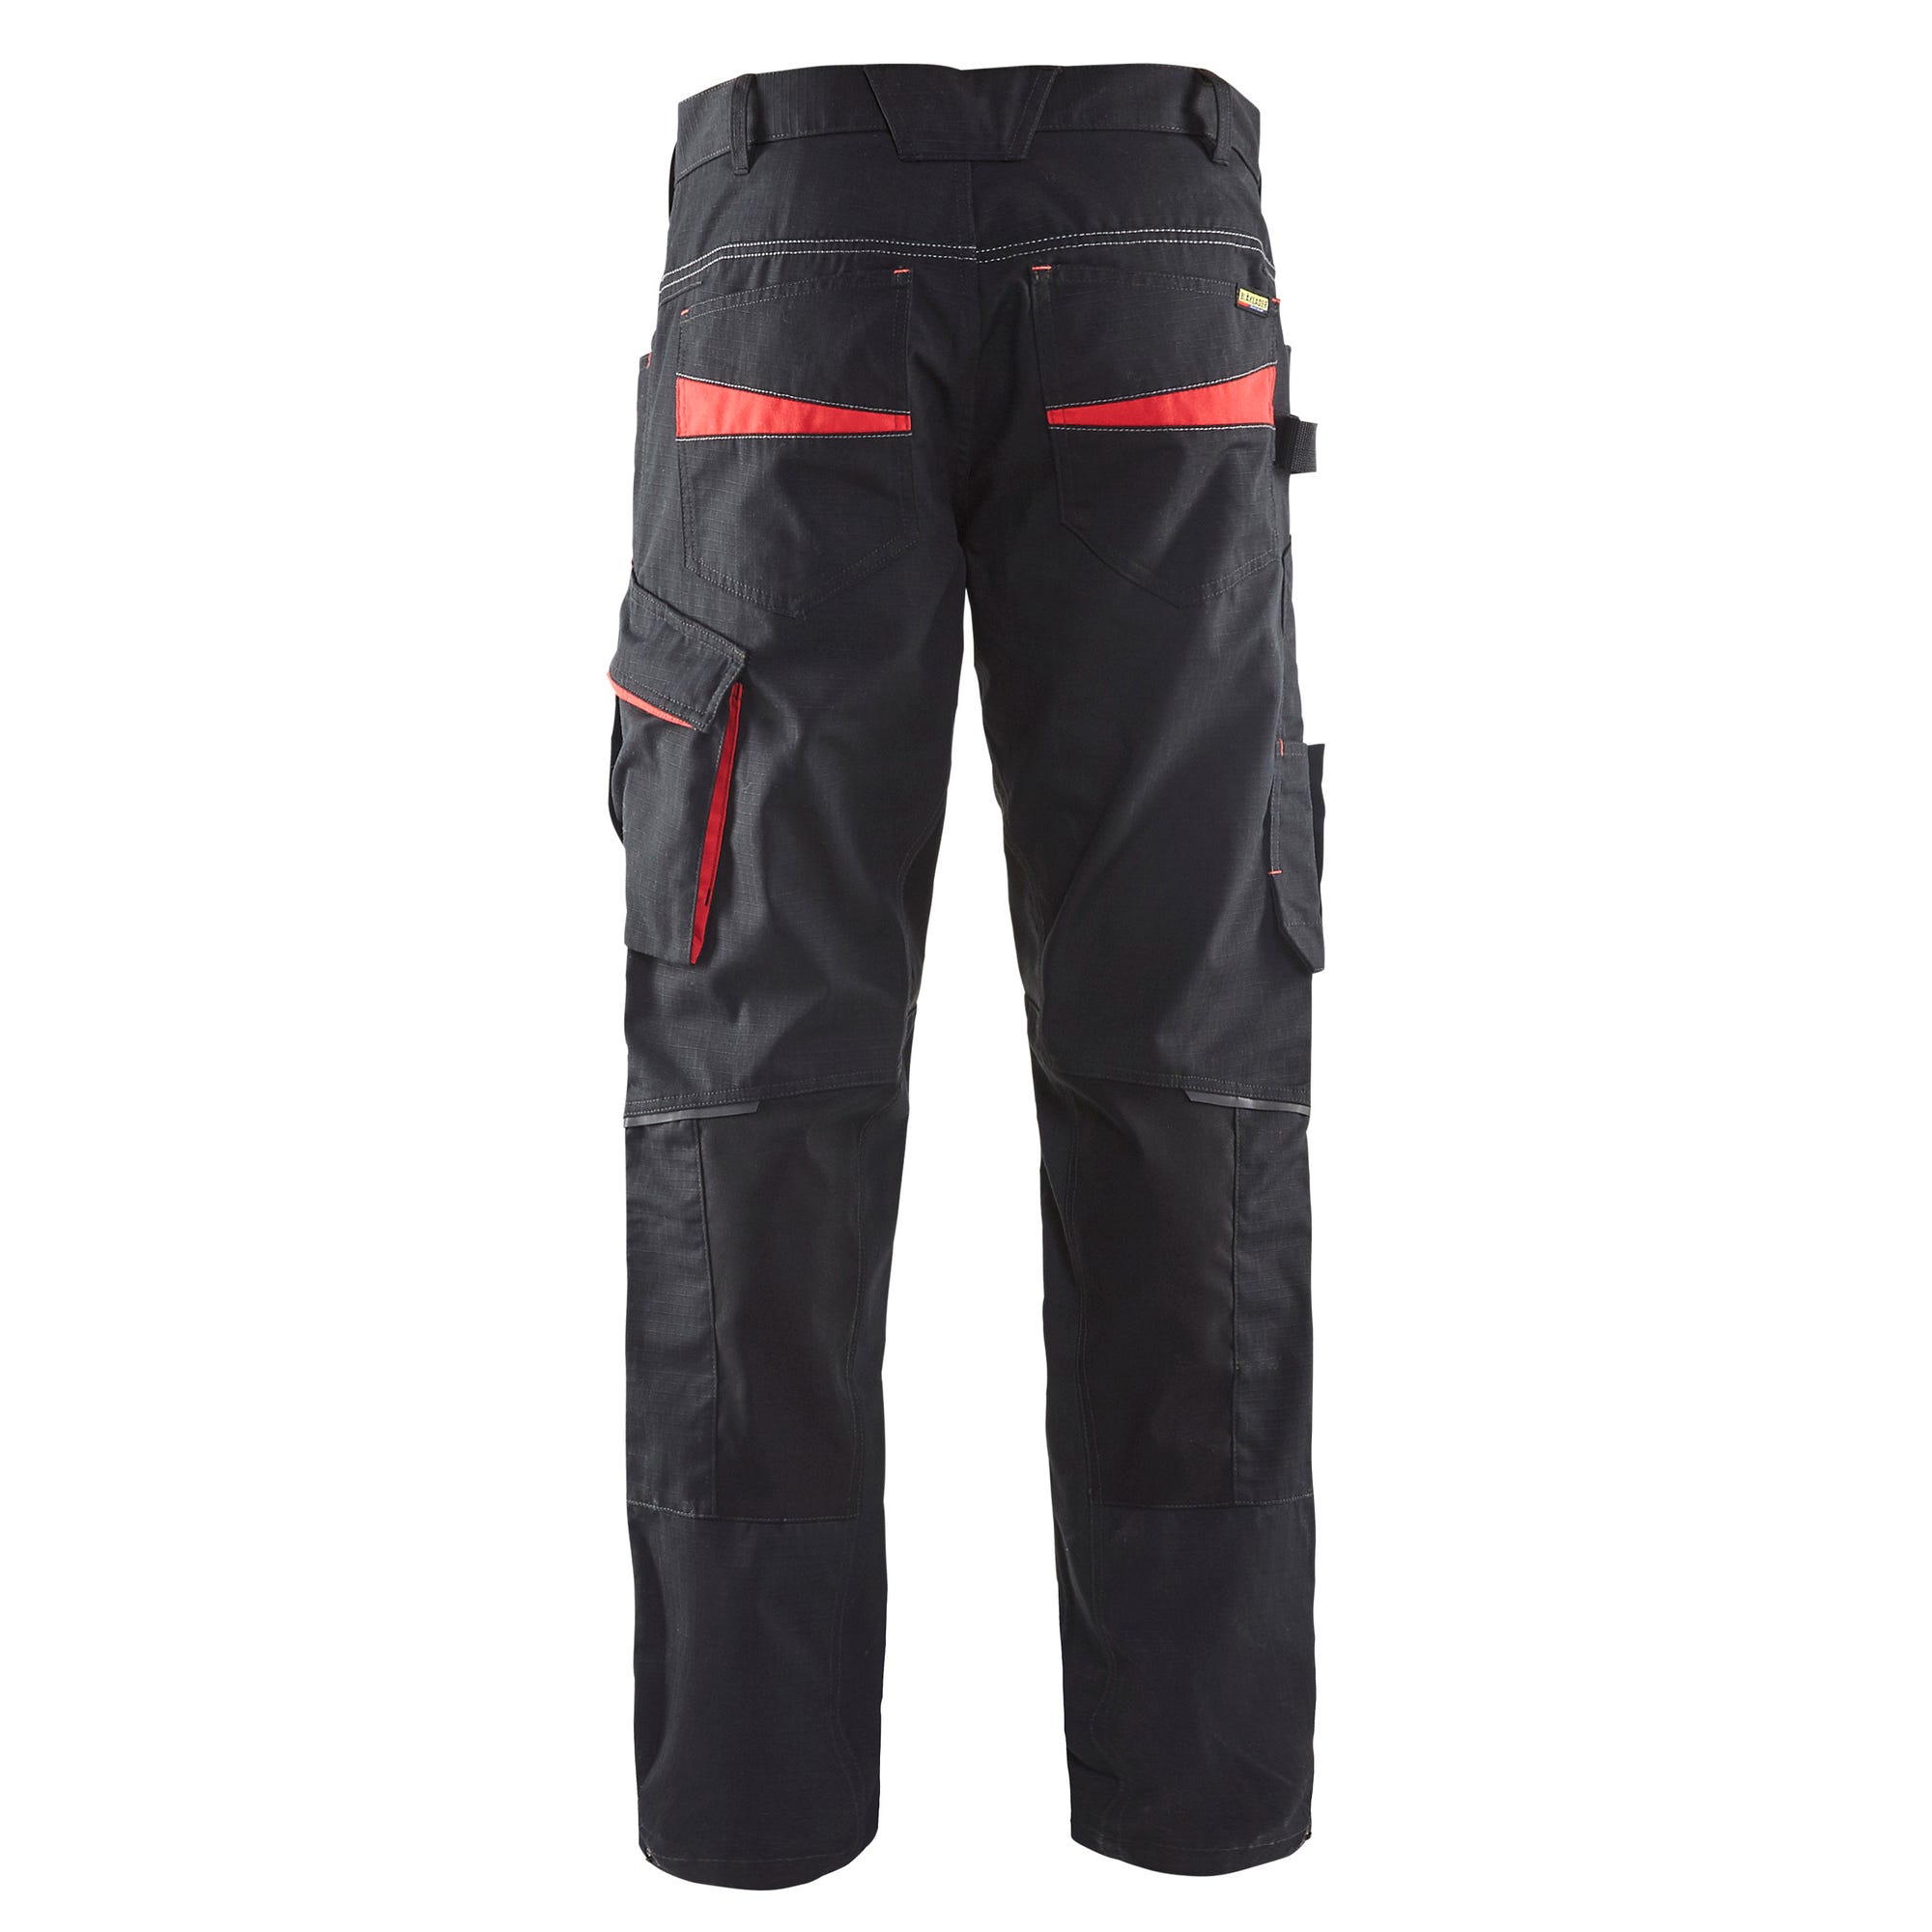 Pantalon de travail stretch Noir/Rouge T.56 1495 - BLAKLADER 1